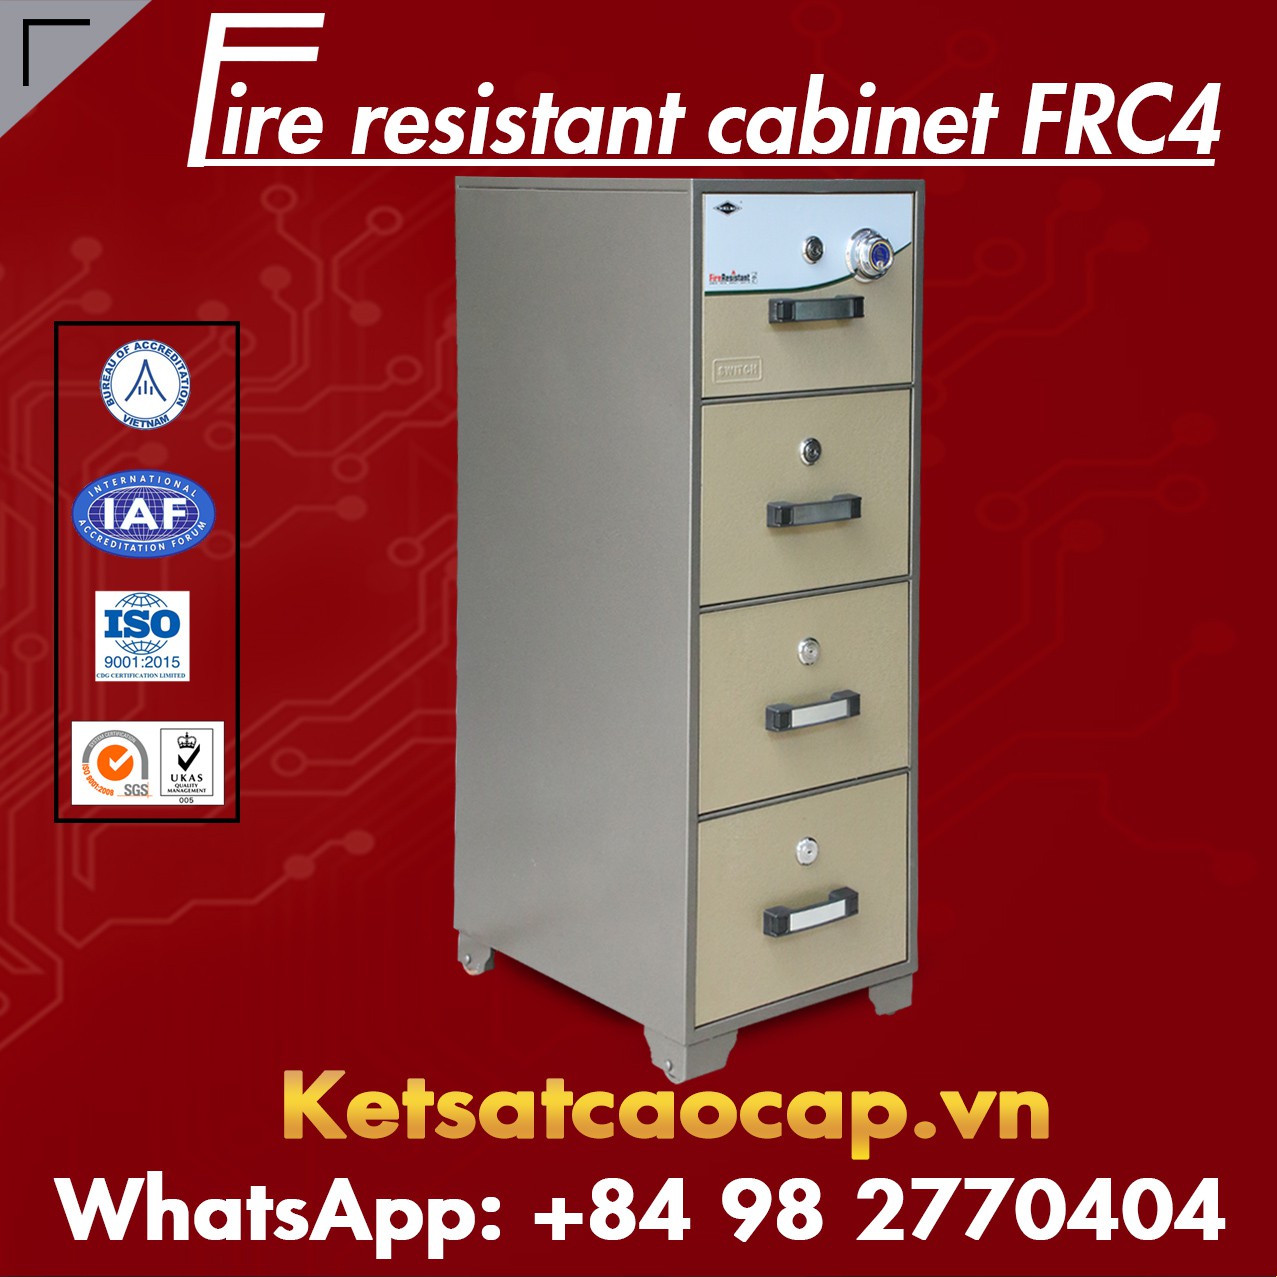 Nguồn Hàng Tủ Sắt Chống Cháy WELKO FRC4 DK